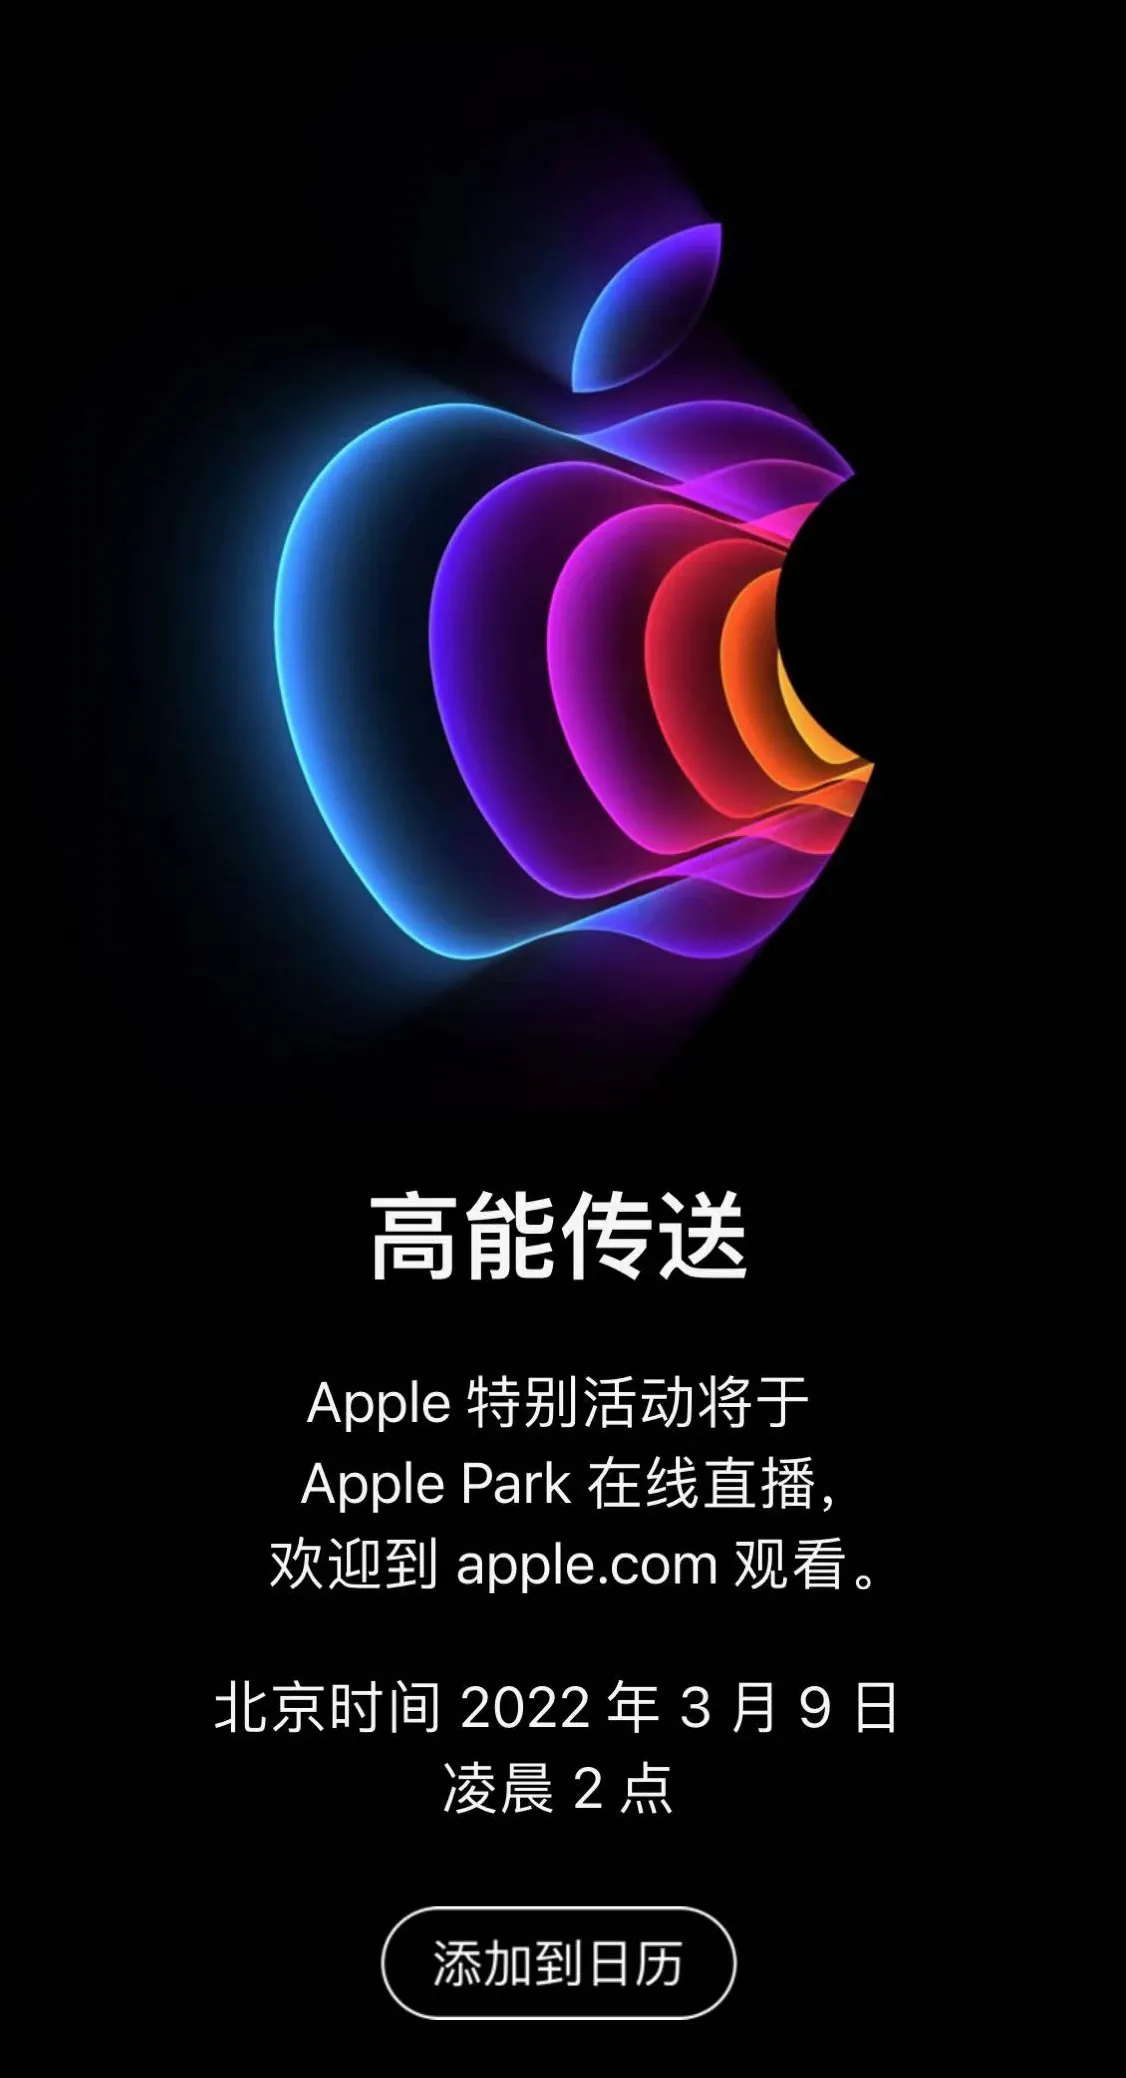 苹果官宣将于北京时间 3 月 9 日举办春季发布会，新款 iPhone SE、Mac 纷至而来